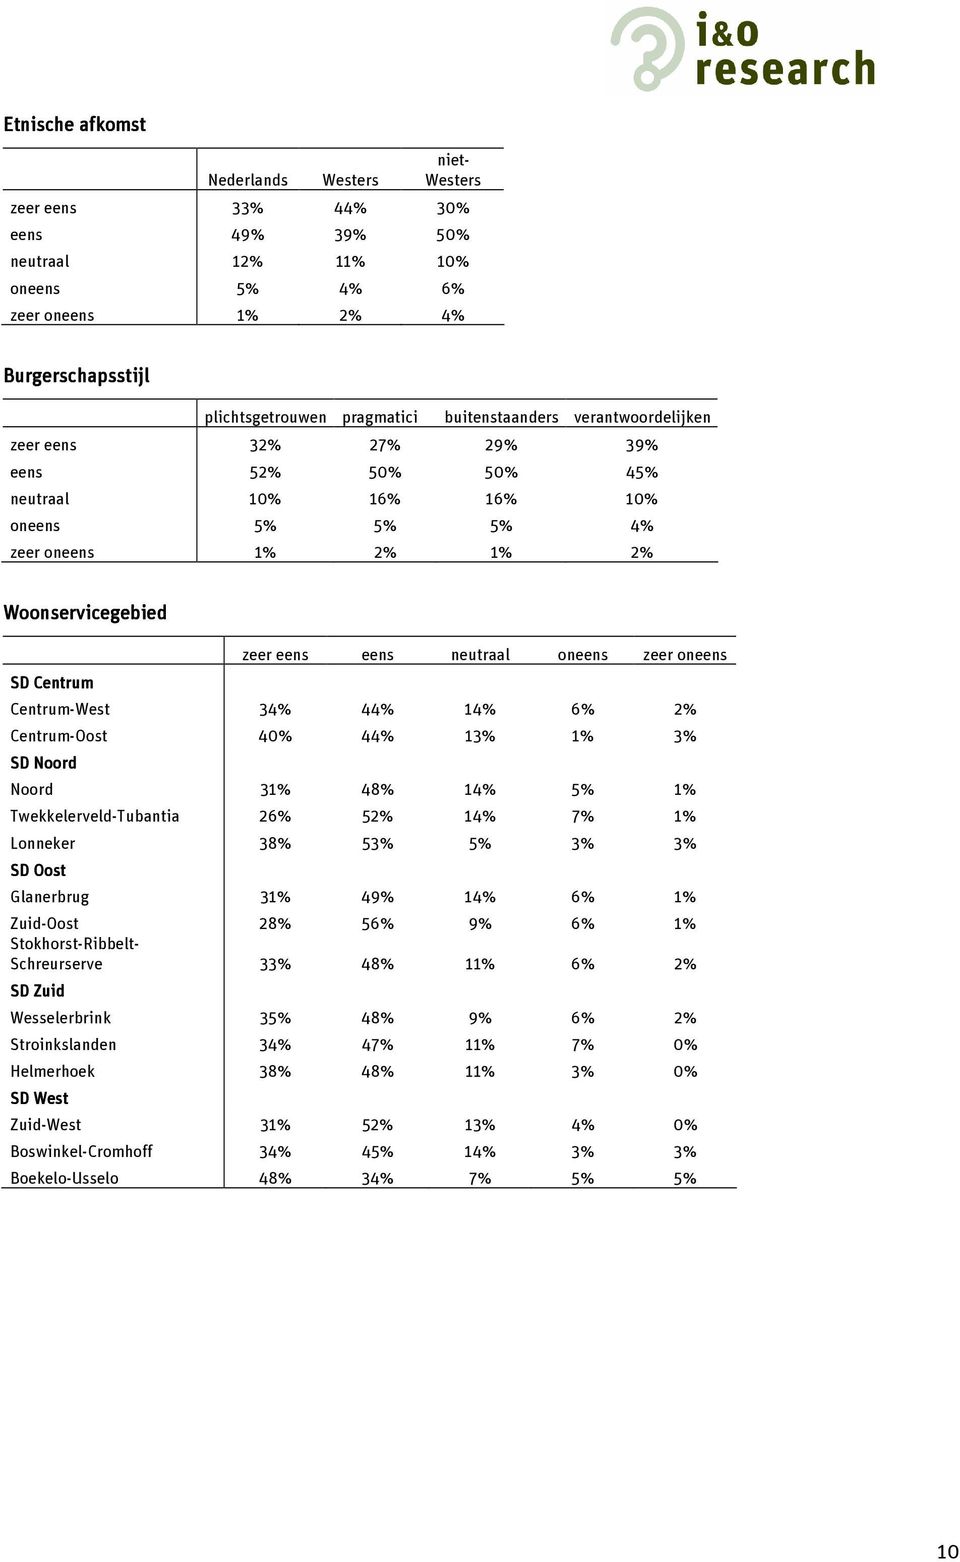 Centrum-Oost 40% 44% 13% 1% 3% SD Noord Noord 31% 48% 14% 5% 1% Twekkelerveld-Tubantia 26% 52% 14% 7% 1% Lonneker 38% 53% 5% 3% 3% SD Oost Glanerbrug 31% 49% 14% 6% 1% Zuid-Oost 28% 56% 9% 6% 1%